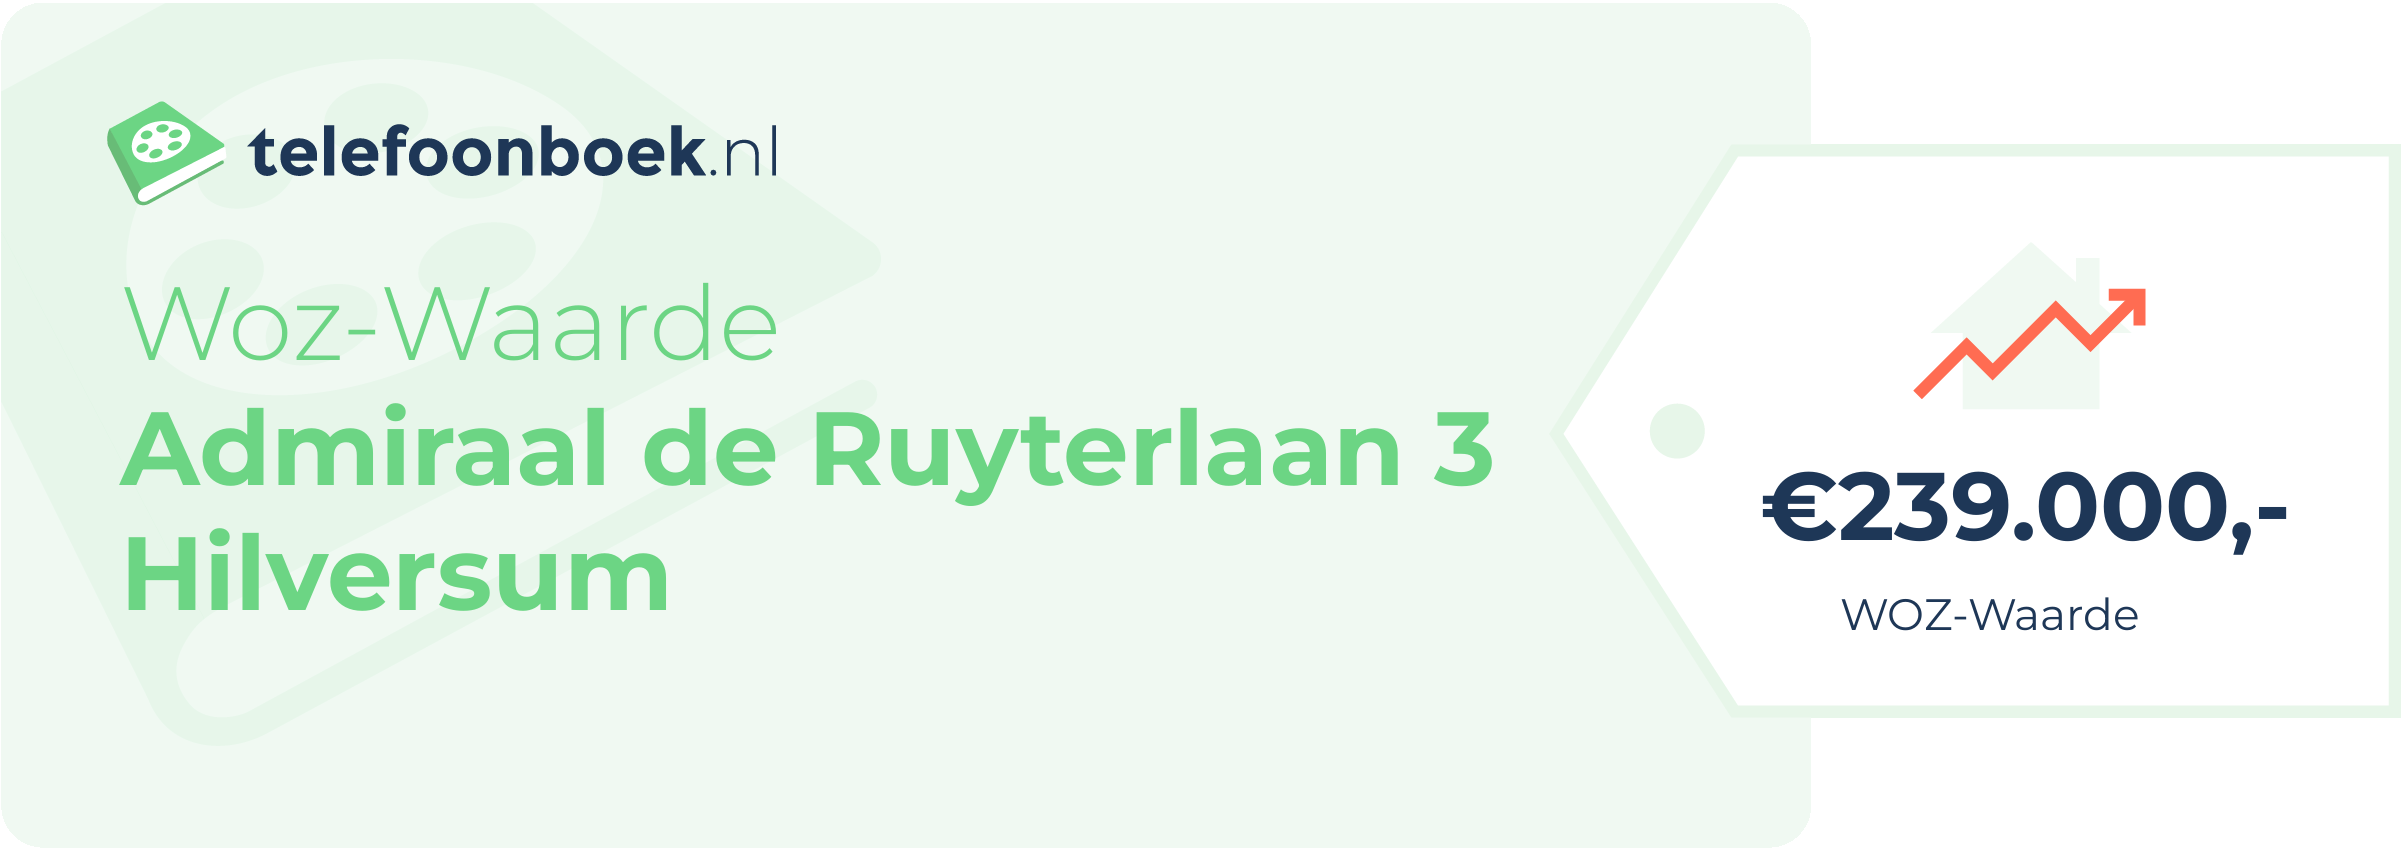 WOZ-waarde Admiraal De Ruyterlaan 3 Hilversum